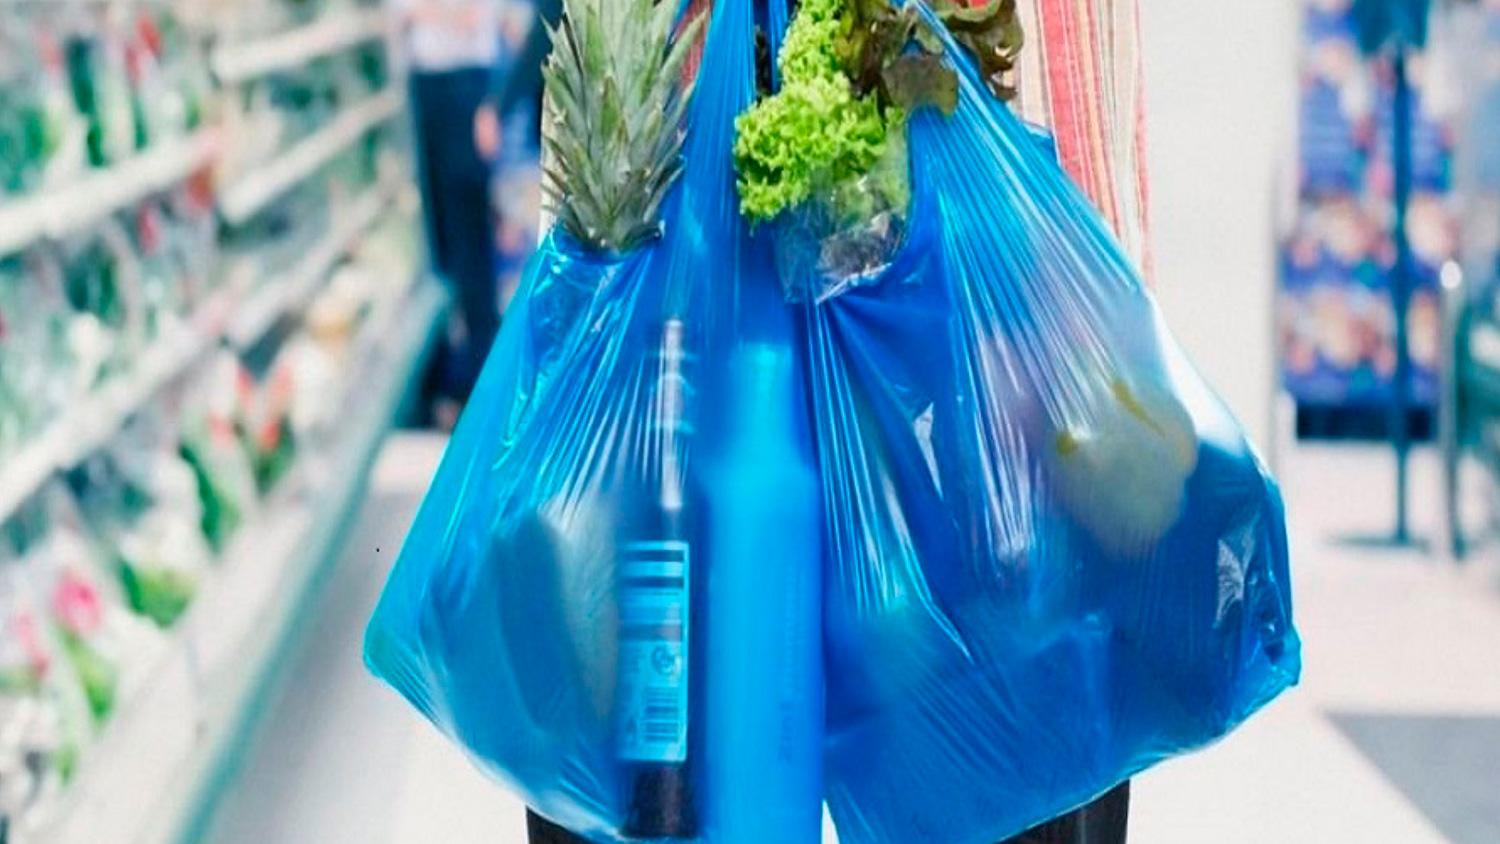 Supermercados eliminaron bolsas plásticas de un solo uso desde el 1° de enero